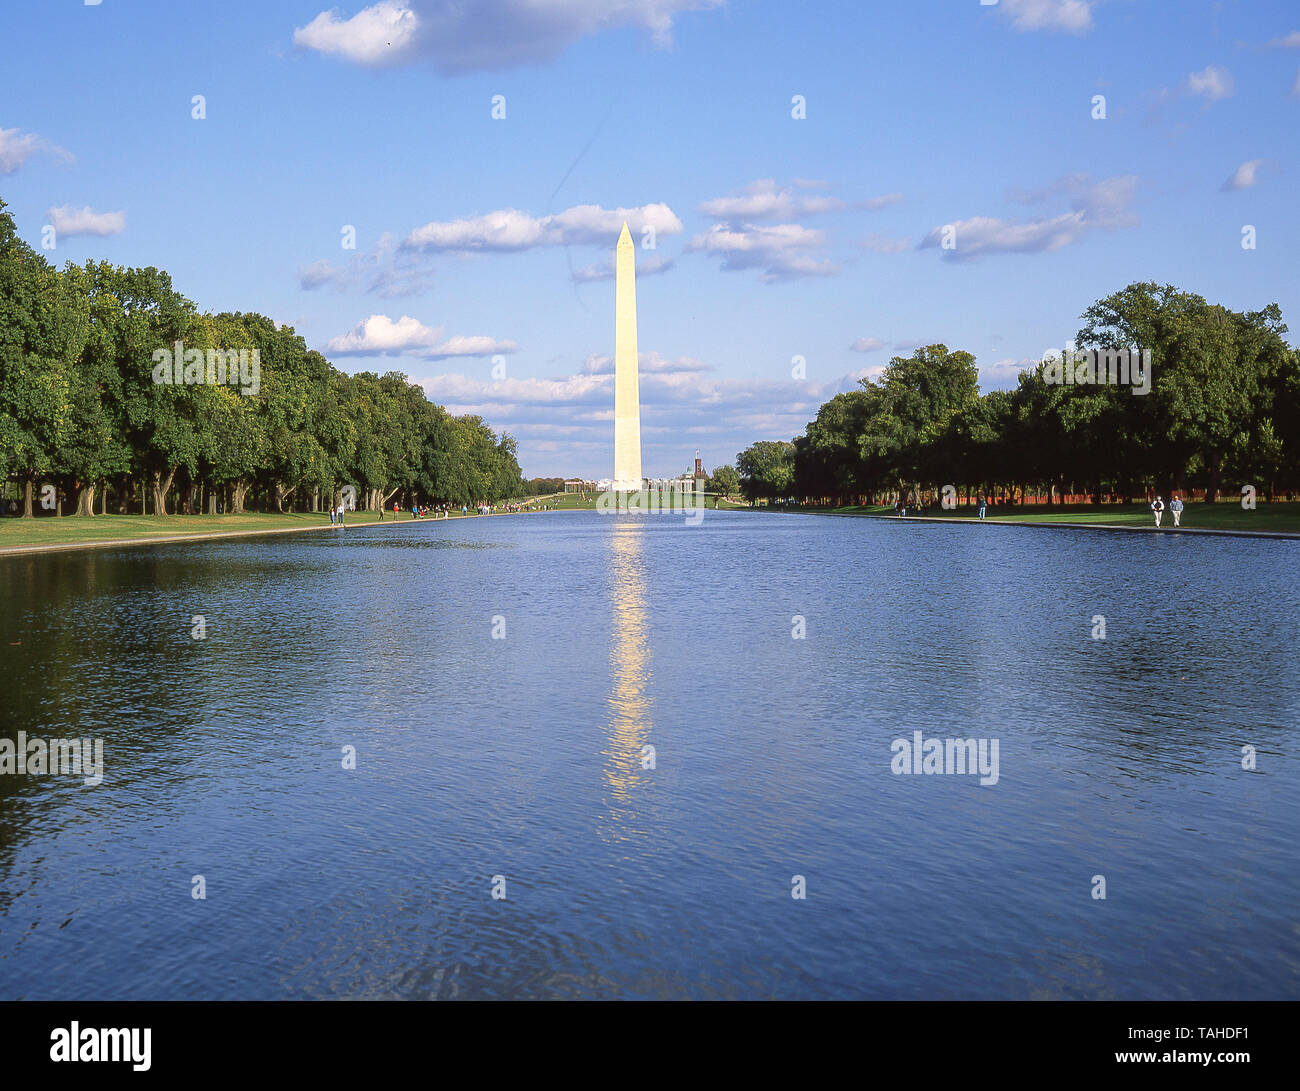 Le Washington Monument et le Lincoln Memorial Reflecting Pool, Washington DC, États-Unis d'Amérique Banque D'Images